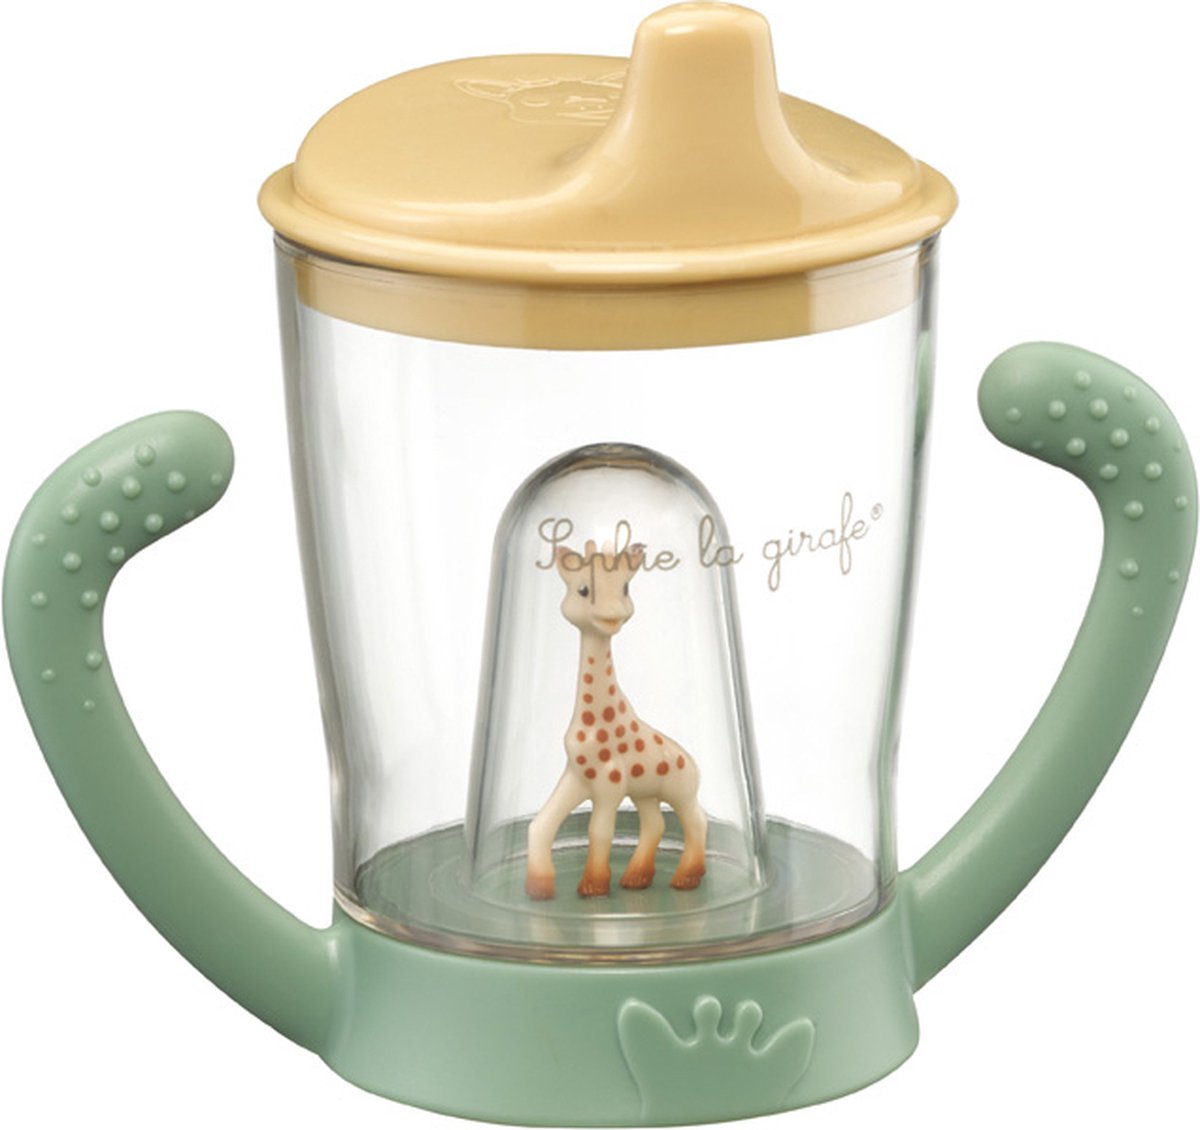 Sophie de giraf Beker - Drinkbeker voor kinderen - Lekvrij - Anti-lek beker - Vanaf 6 maanden - 200 ml - In witte geschenkdoos - Geel/Groen - Sophie de Giraf